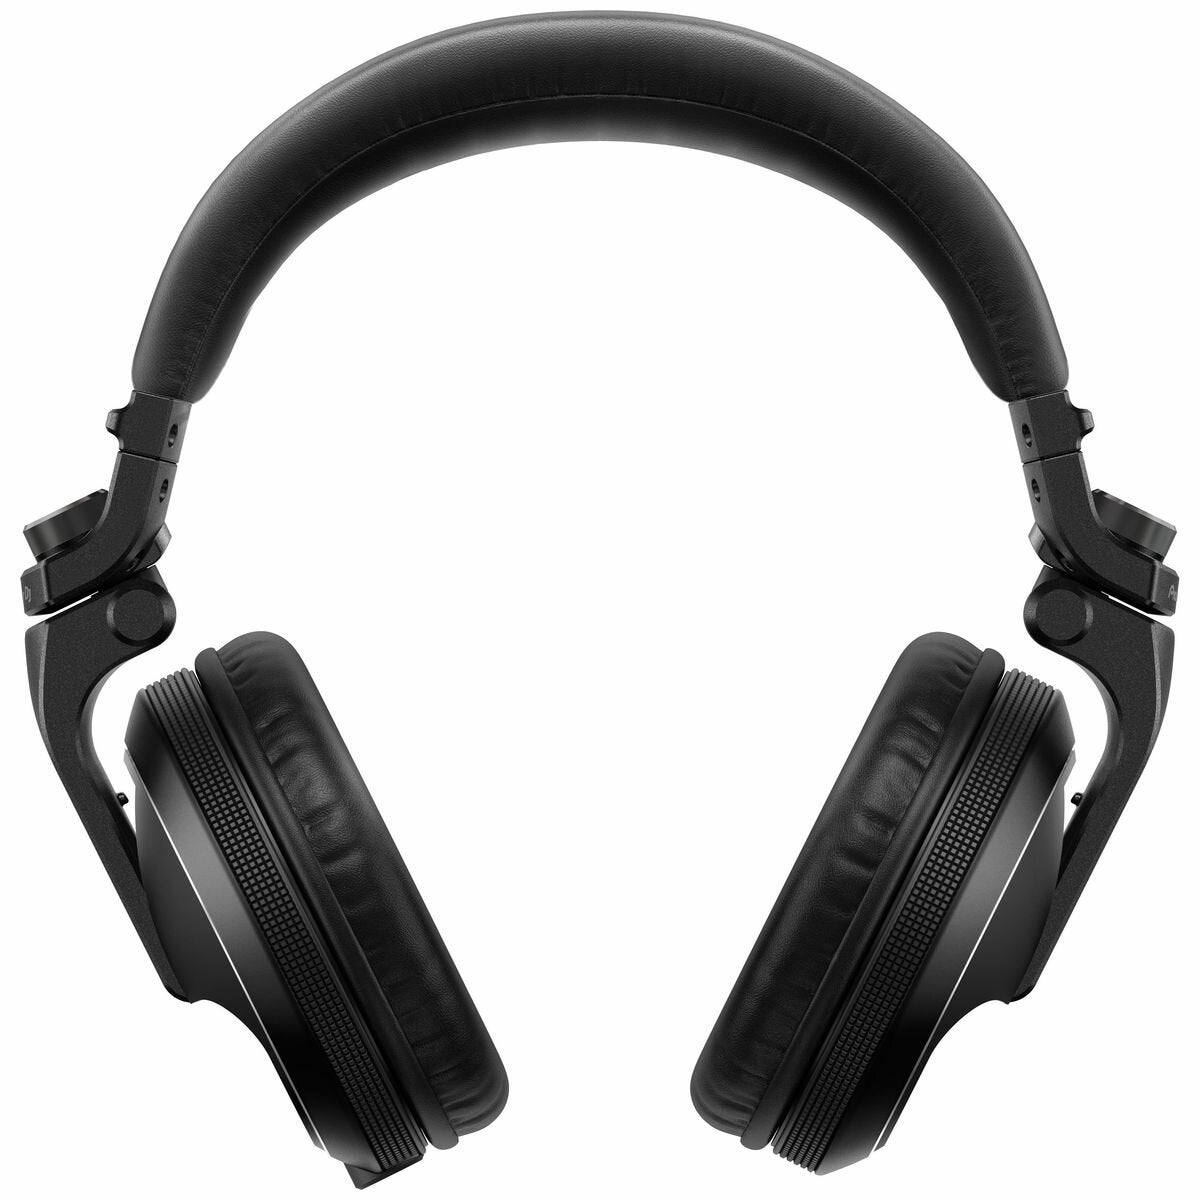 Image of Pioneer DJ HDJ-X5-SL Over-ear DJ Headphones Black PDJ-HDJ-X5-BK